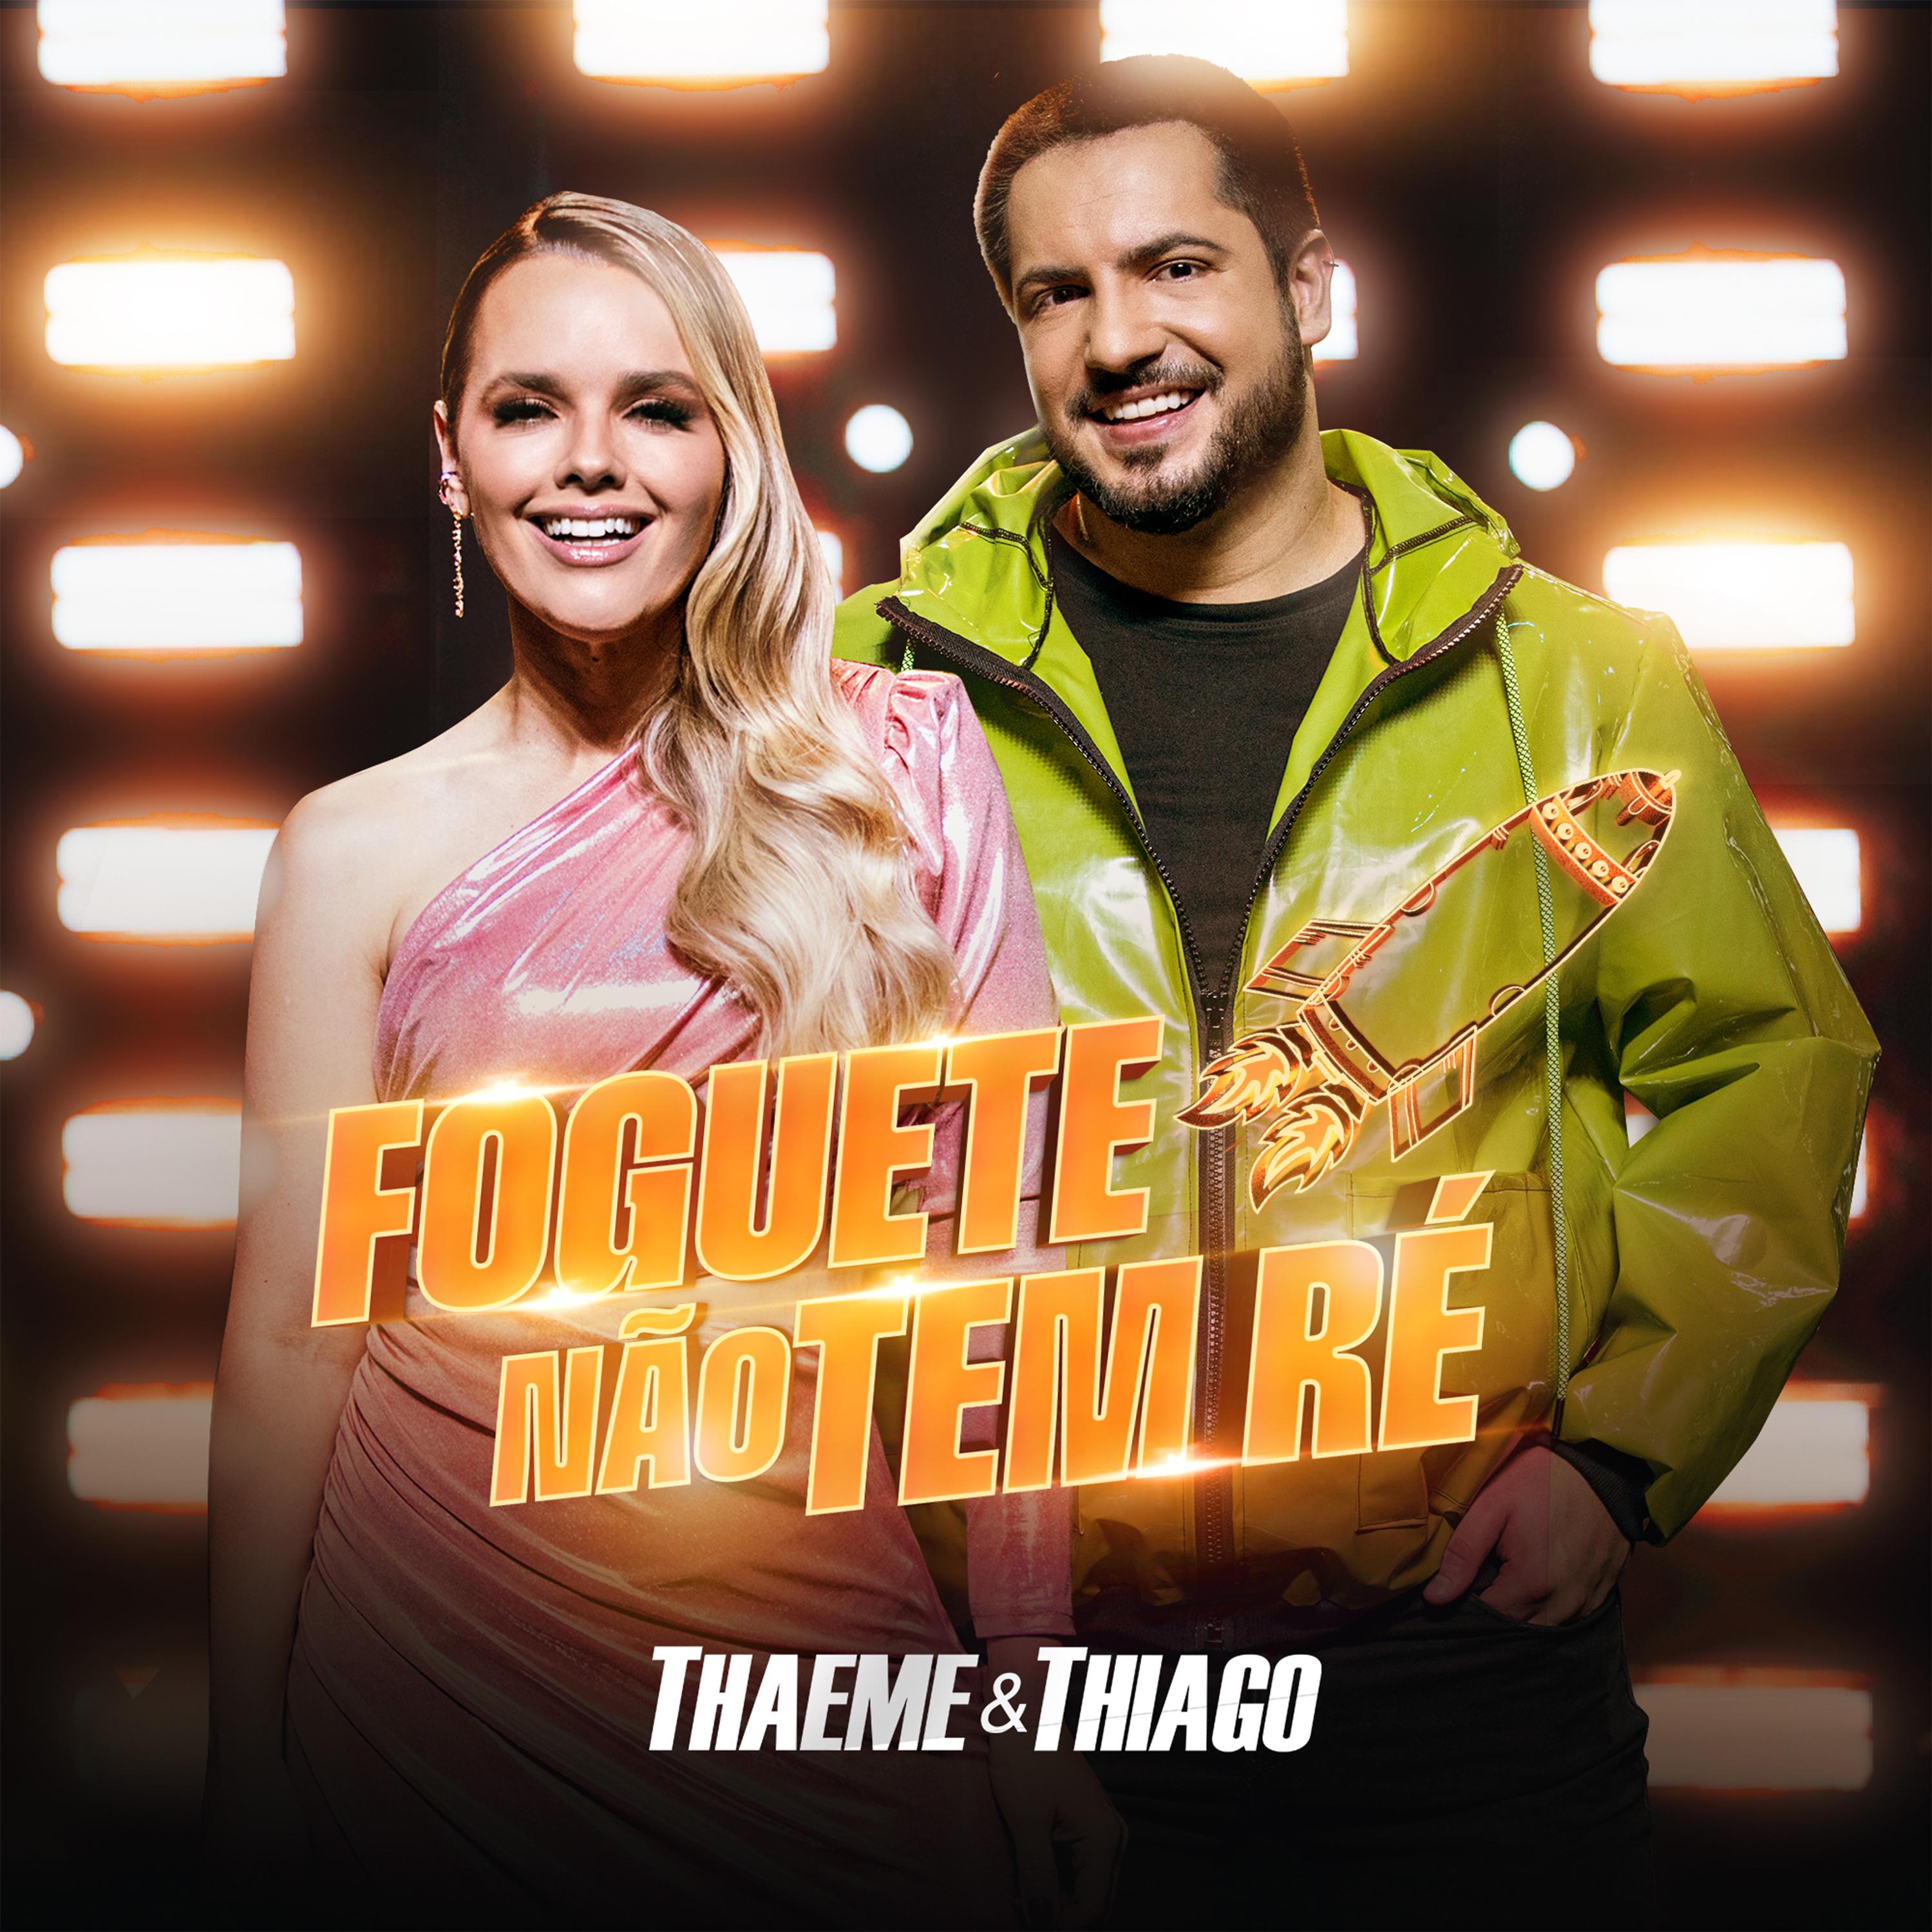 Постер альбома Foguete Não Tem Ré